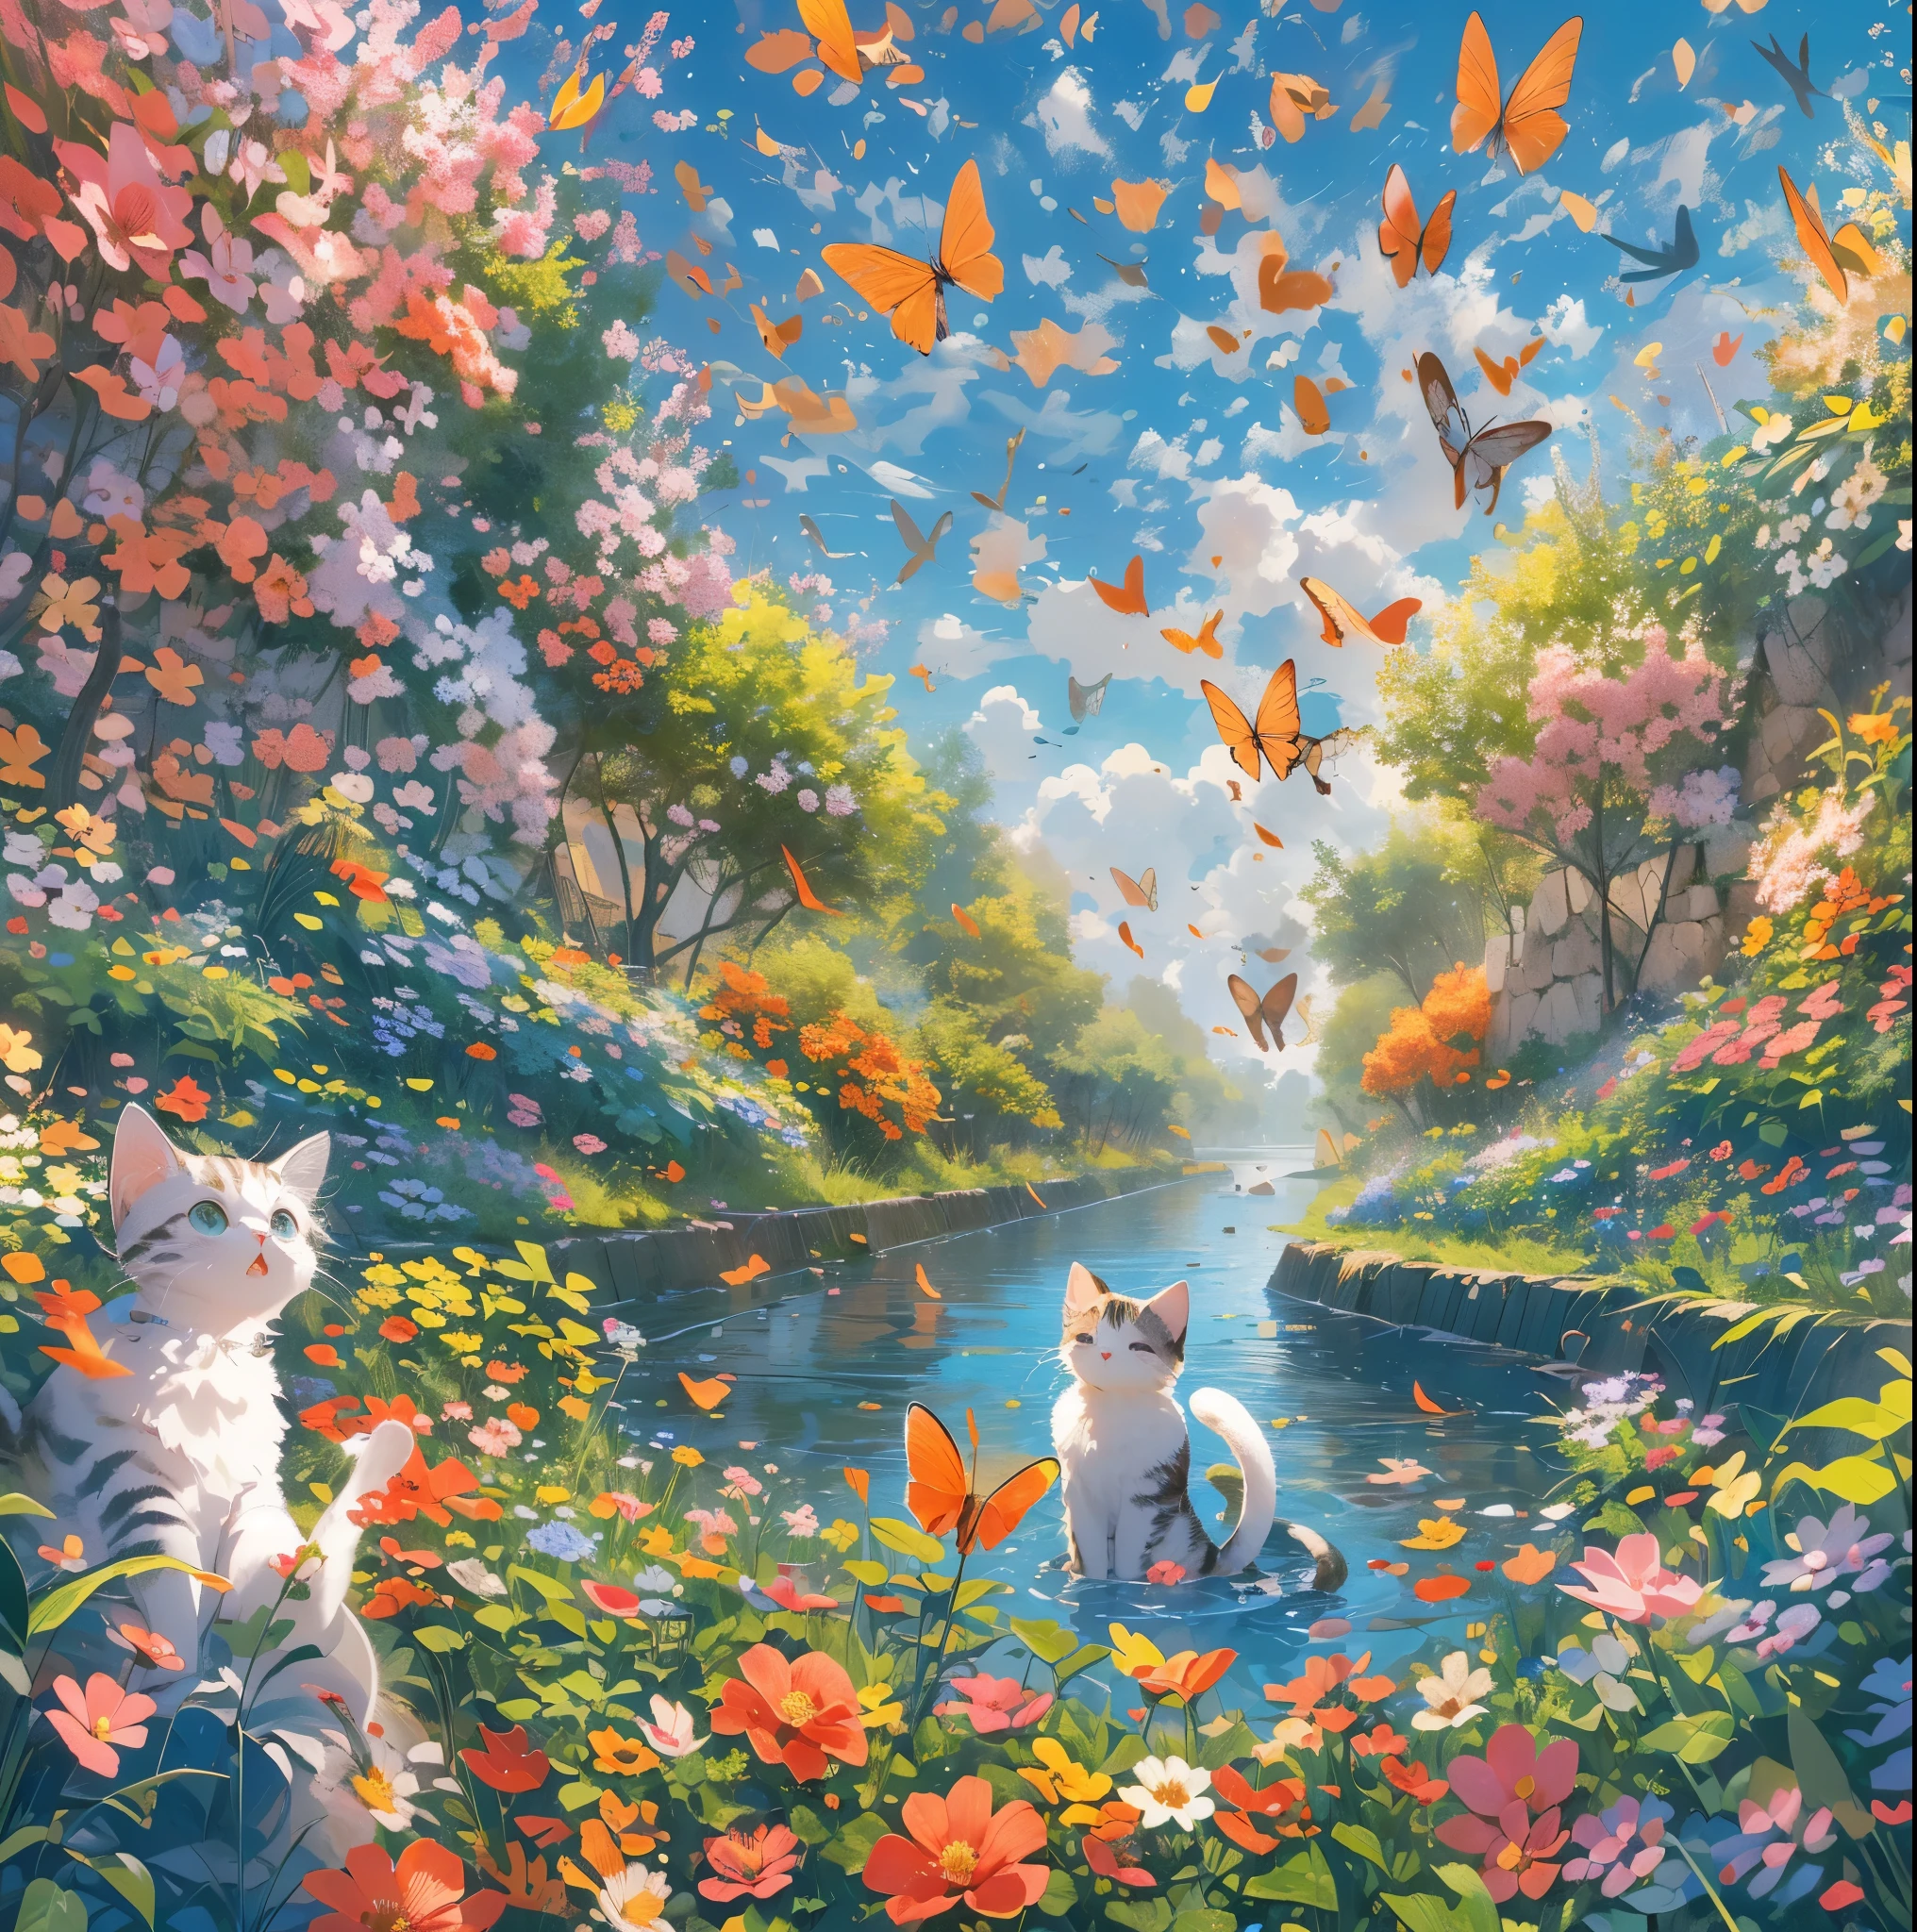 absurdes, ultra-détaillé,couleur vive,(8k:1.5),morceau de masséter,Les coeurs volent,paysage lumineux、pour ça, ciel ouvert bleu,(yeux bleu profond:1.4) ,Des fleurs colorées fleurissent autour de la rivière,(Le paradis des chats:1.3),rayons de soleil,Le ciel bleu s&#39;étend à perte de vue,Les chats sont assis dans un jardin fleuri avec des expressions calmes,Les oiseaux volent aussi dans le ciel,Confettis,